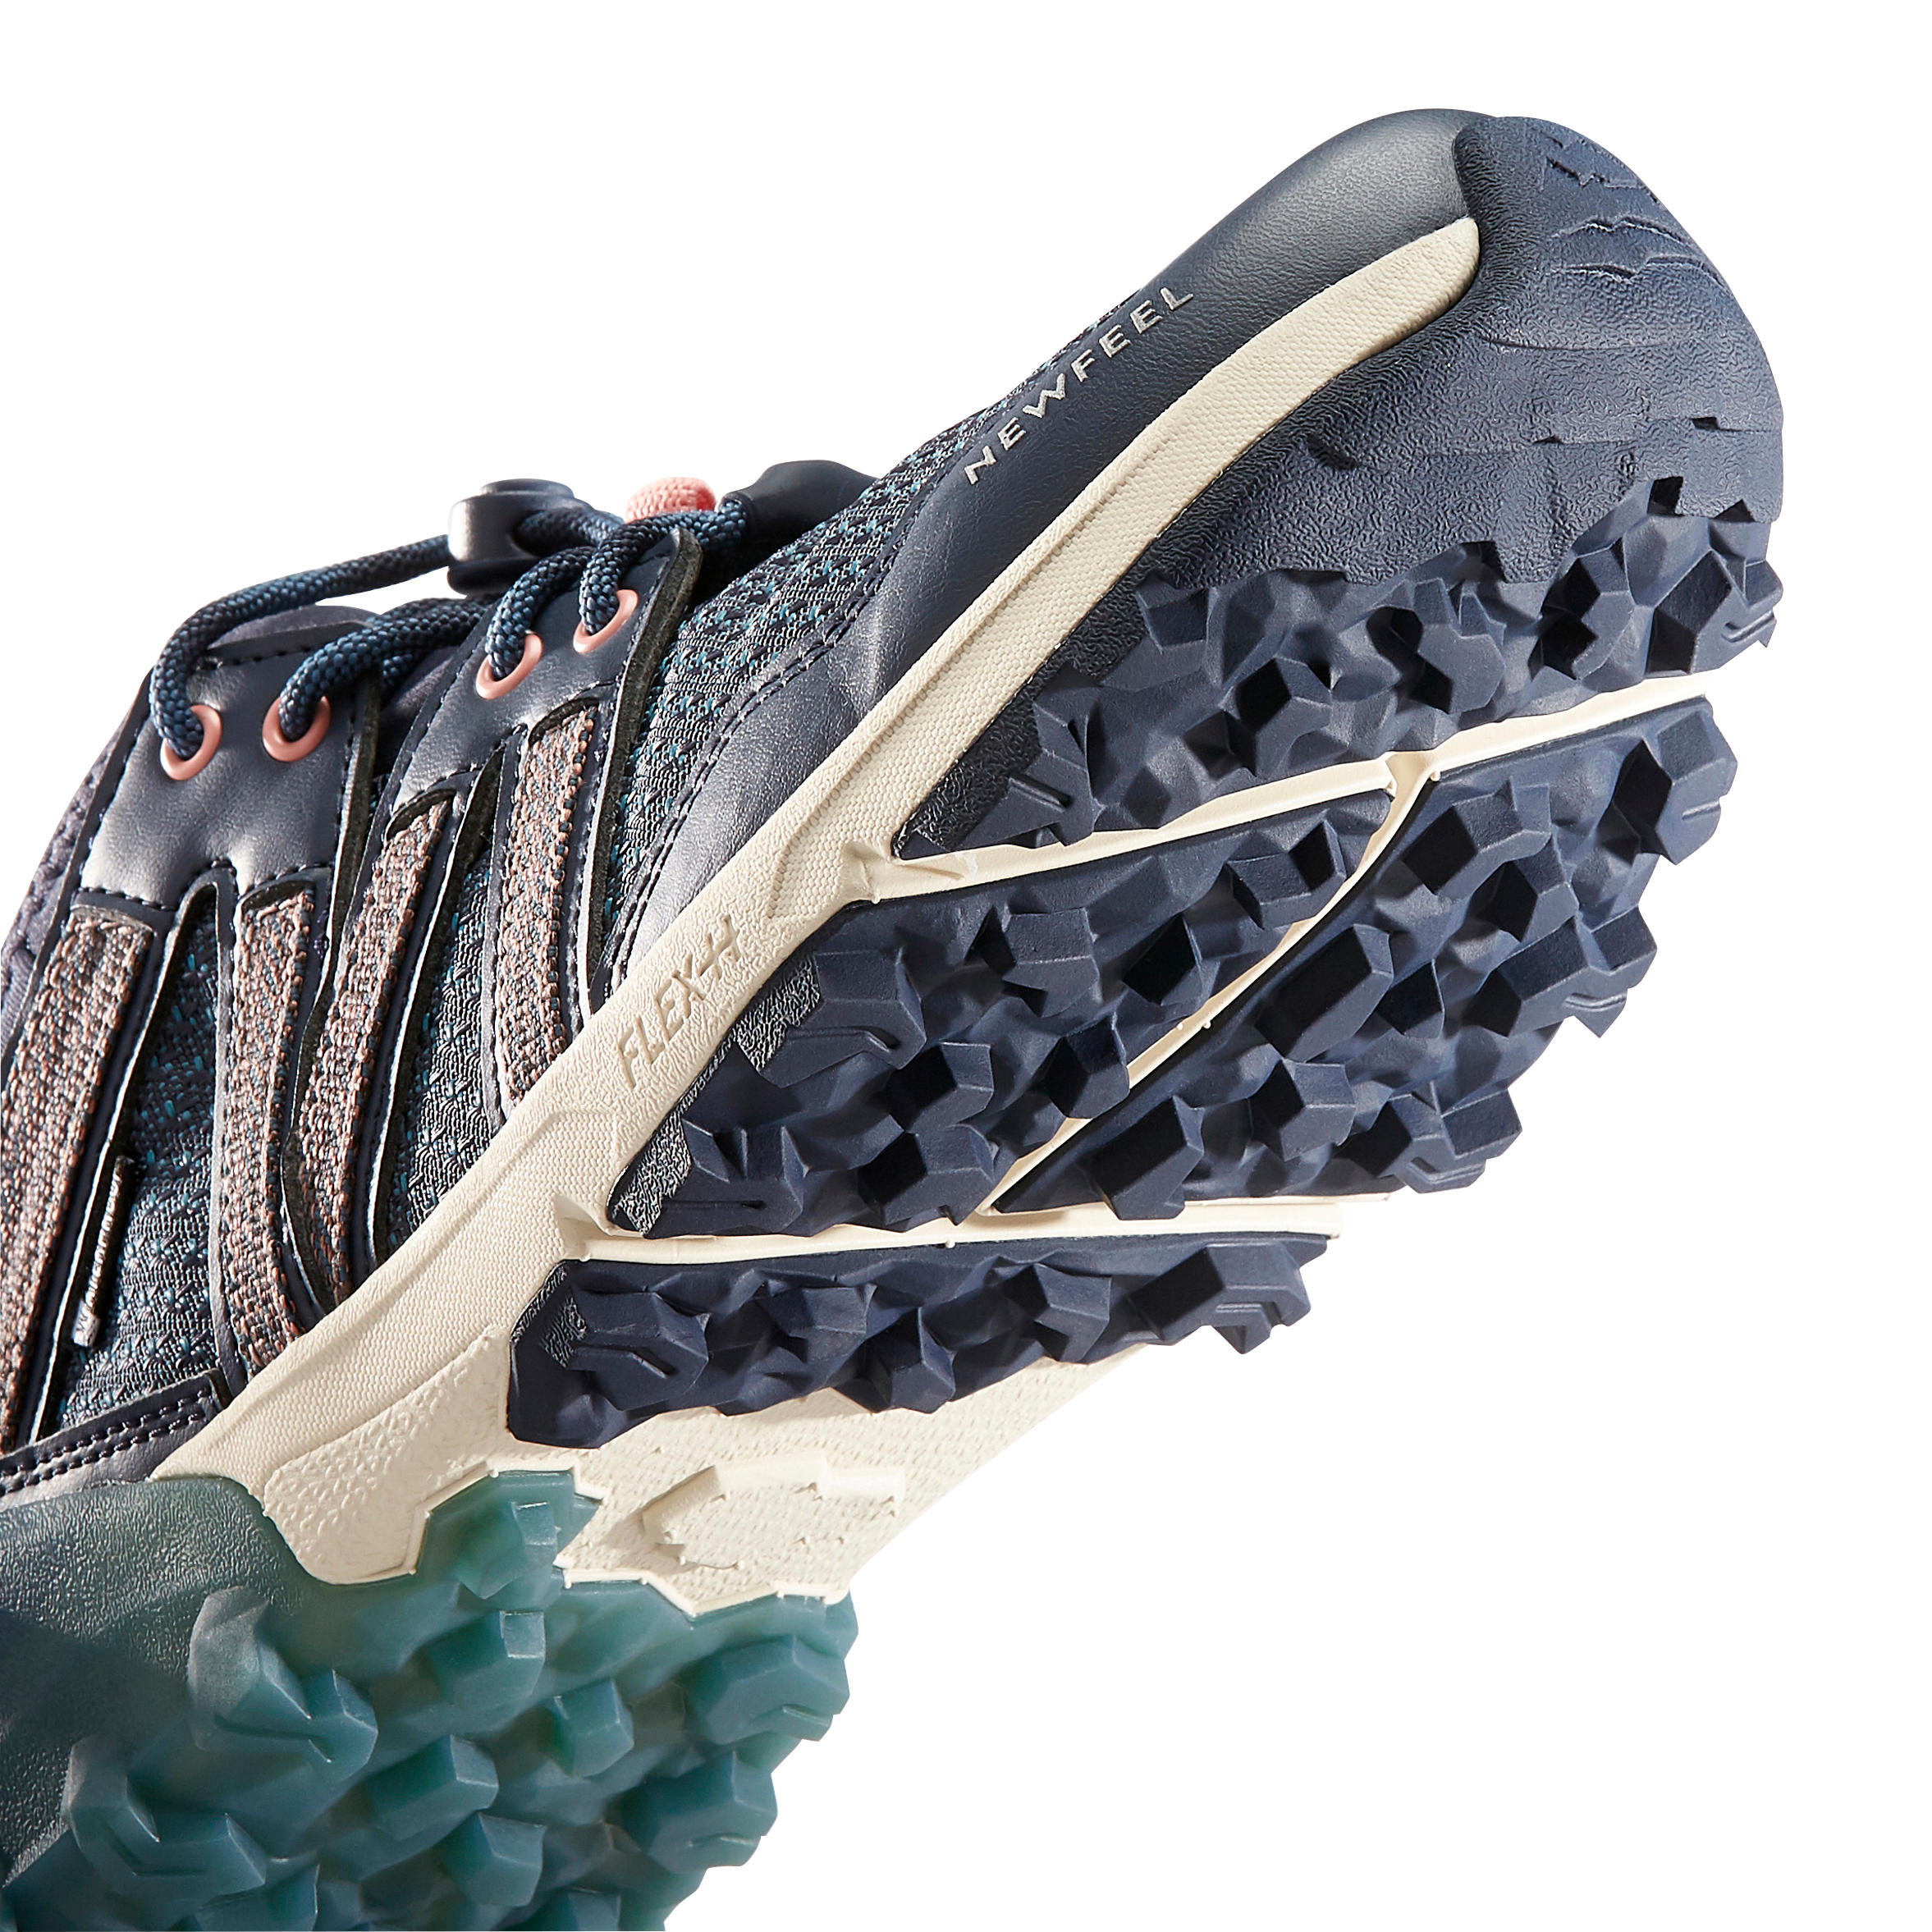 NW 580 Nordic Walking Waterproof Shoes - Blue 11/16